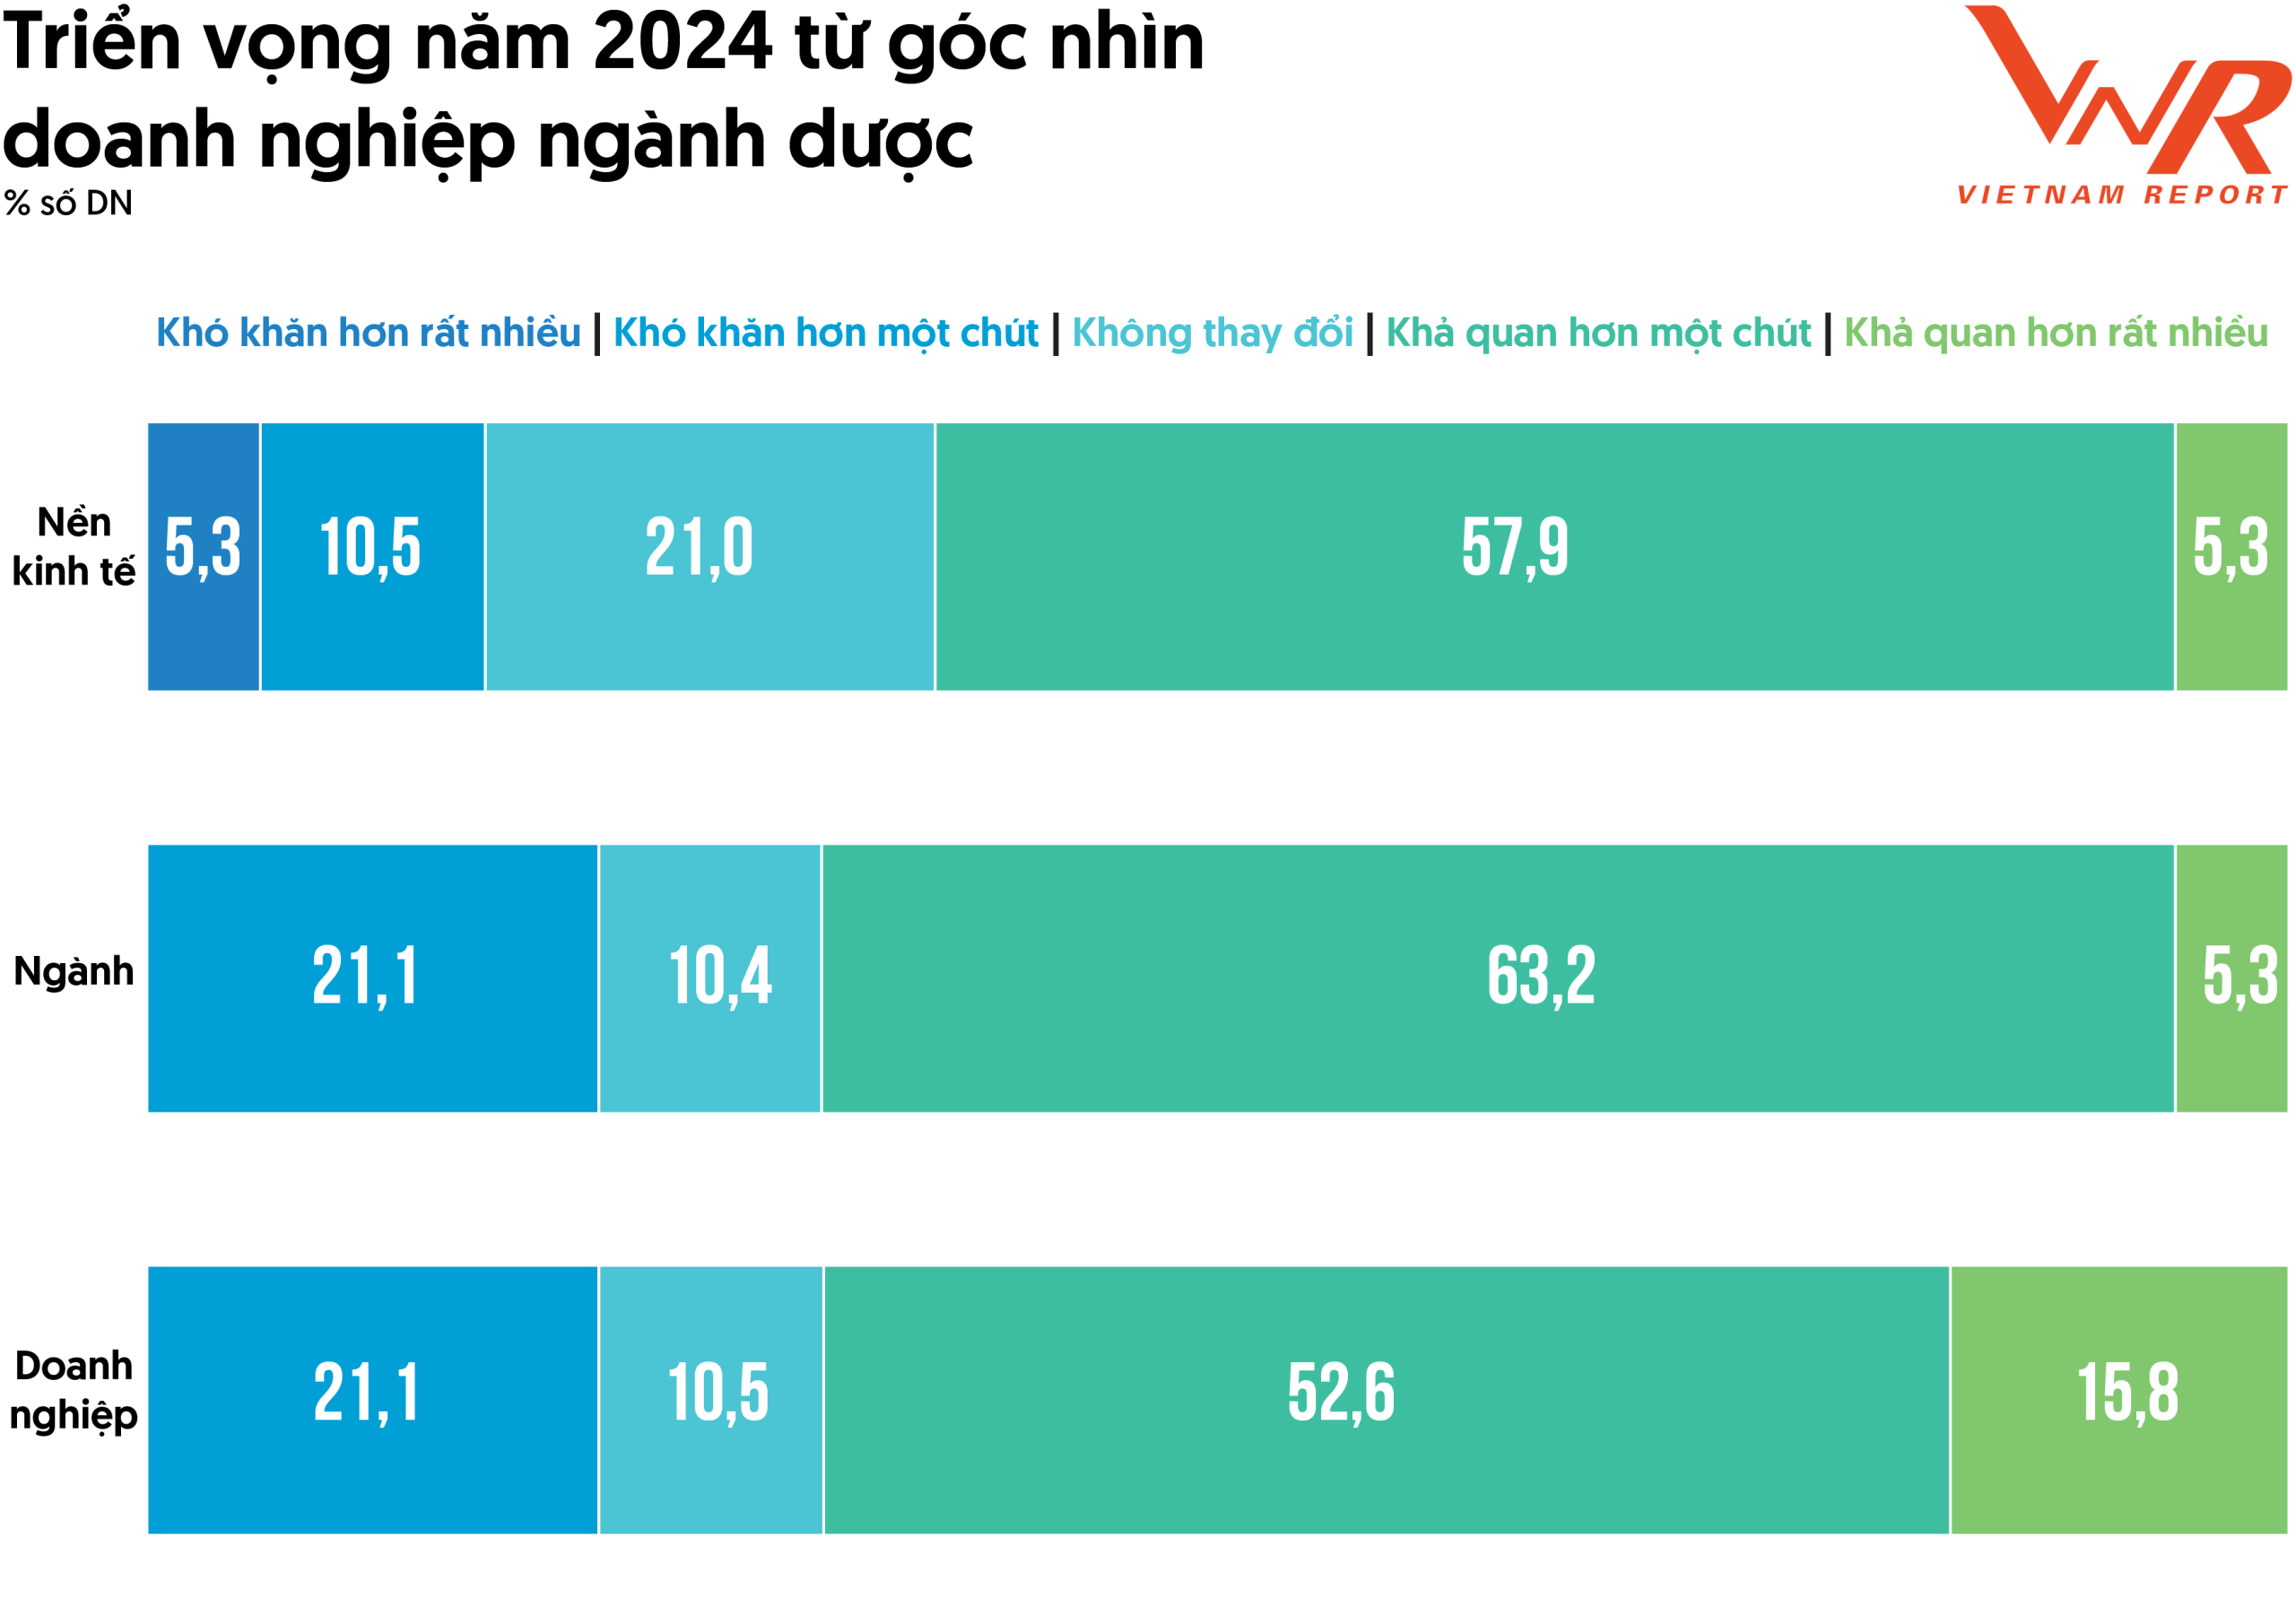 Triển vọng năm 2024 từ góc nhìn doanh nghiệp ngành dược (Nguồn: Vietnam Report, Khảo sát doanh nghiệp Dược, tháng 10-11/2023)